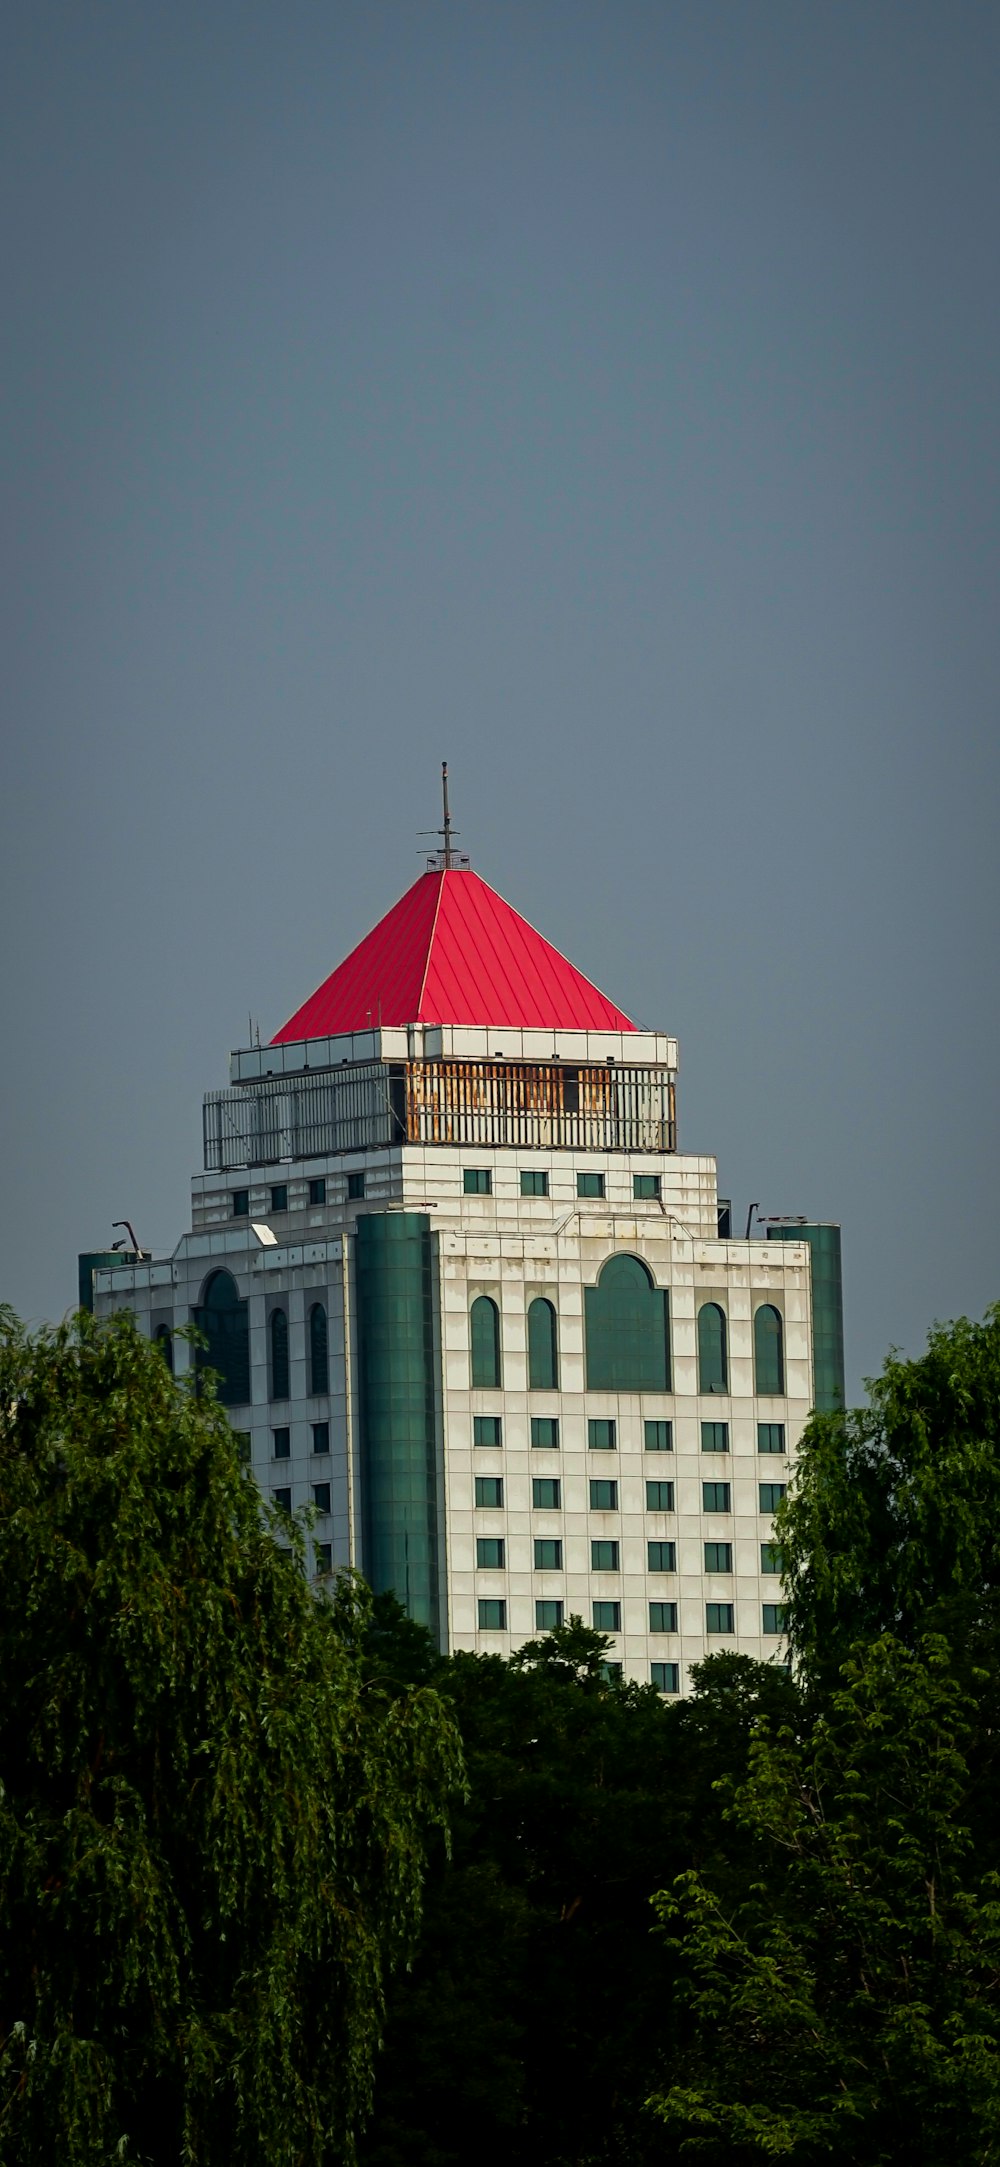 Ein hohes weißes Gebäude mit rotem Dach